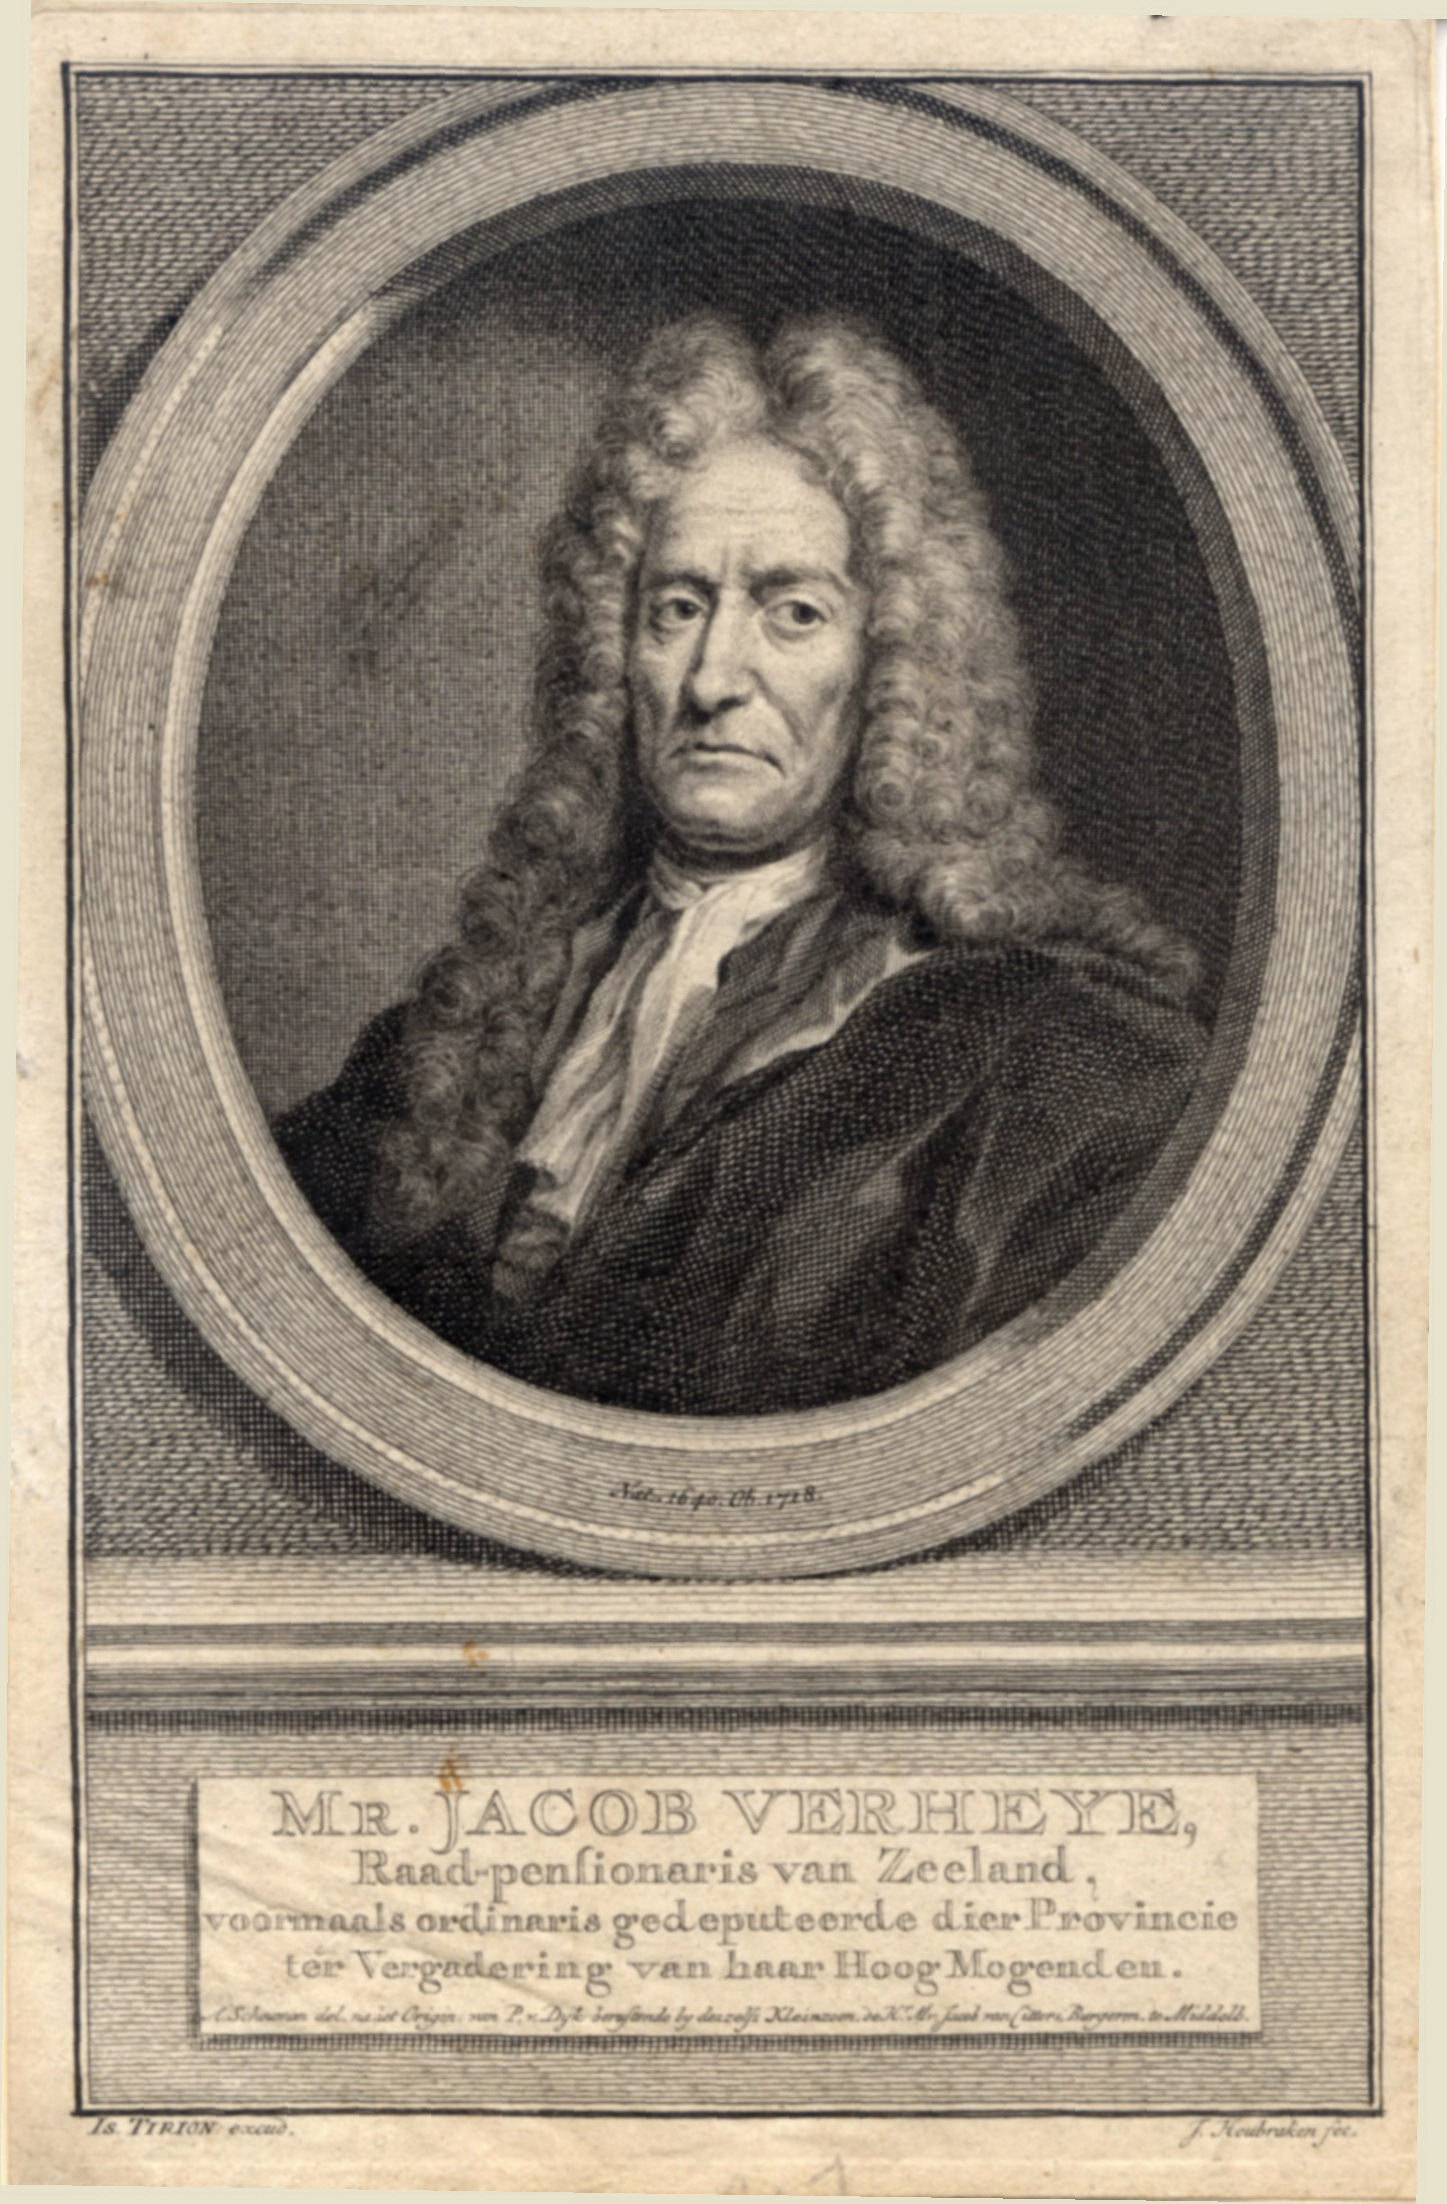 Mr. Jacob Verheye, Raadspensionaris van Zeeland, 1715.